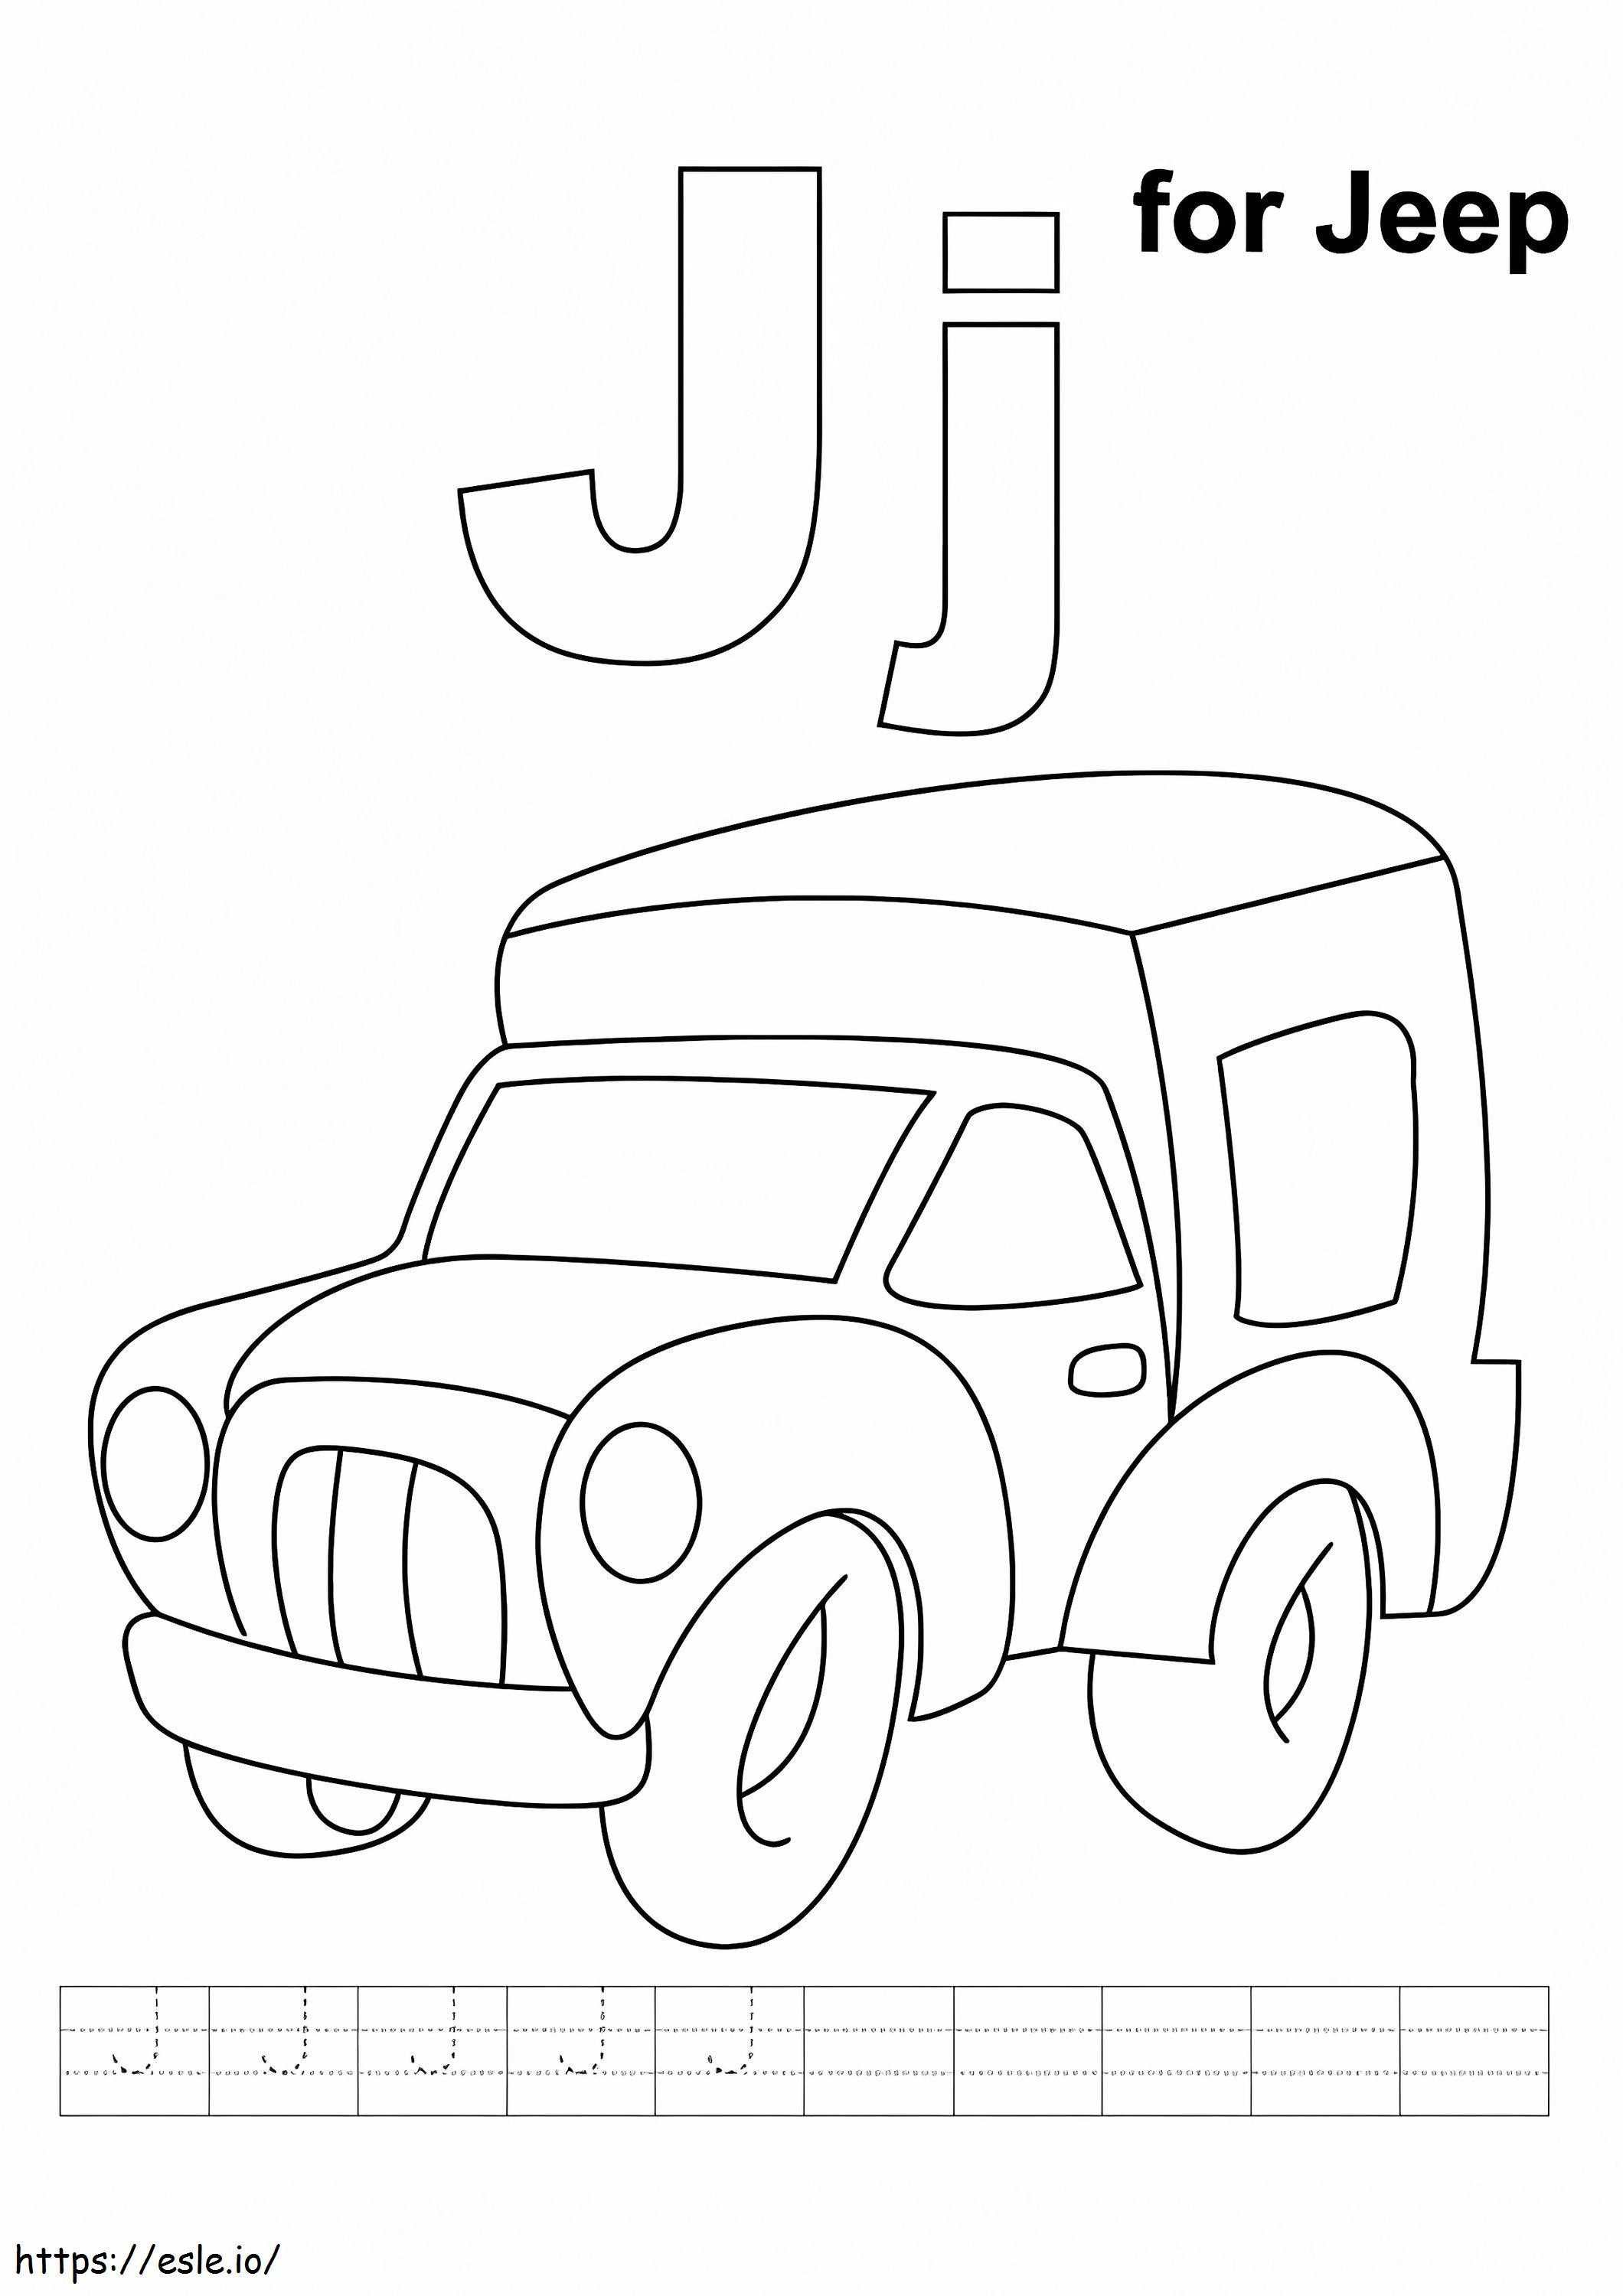  J Voor Jeep A4 kleurplaat kleurplaat